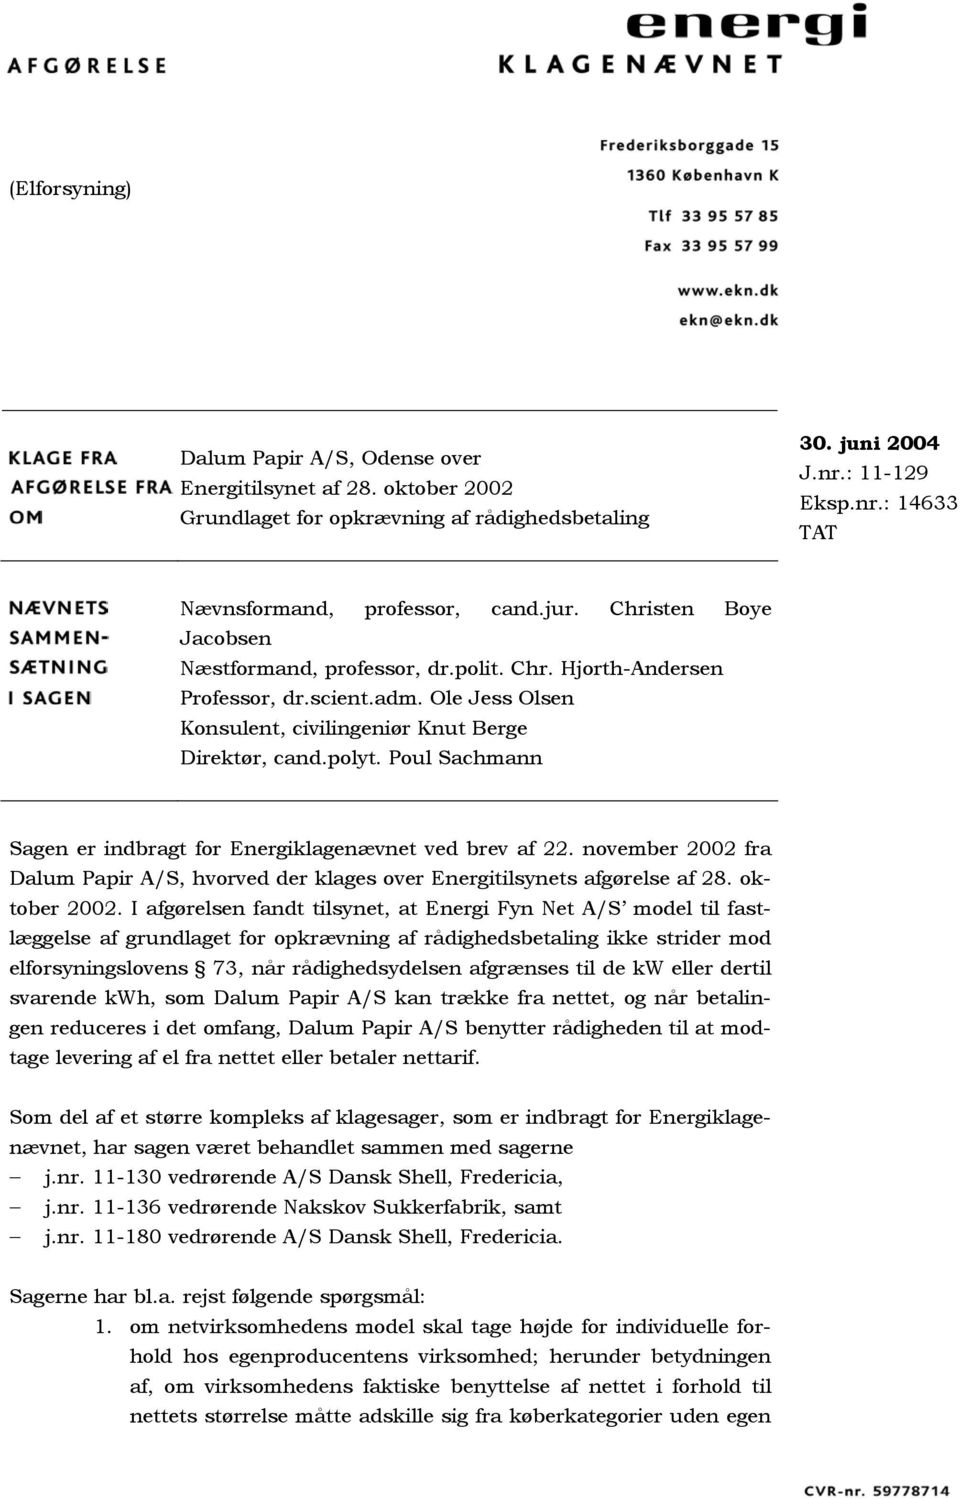 Poul Sachmann Sagen er indbragt for Energiklagenævnet ved brev af 22. november 2002 fra Dalum Papir A/S, hvorved der klages over Energitilsynets afgørelse af 28. oktober 2002.